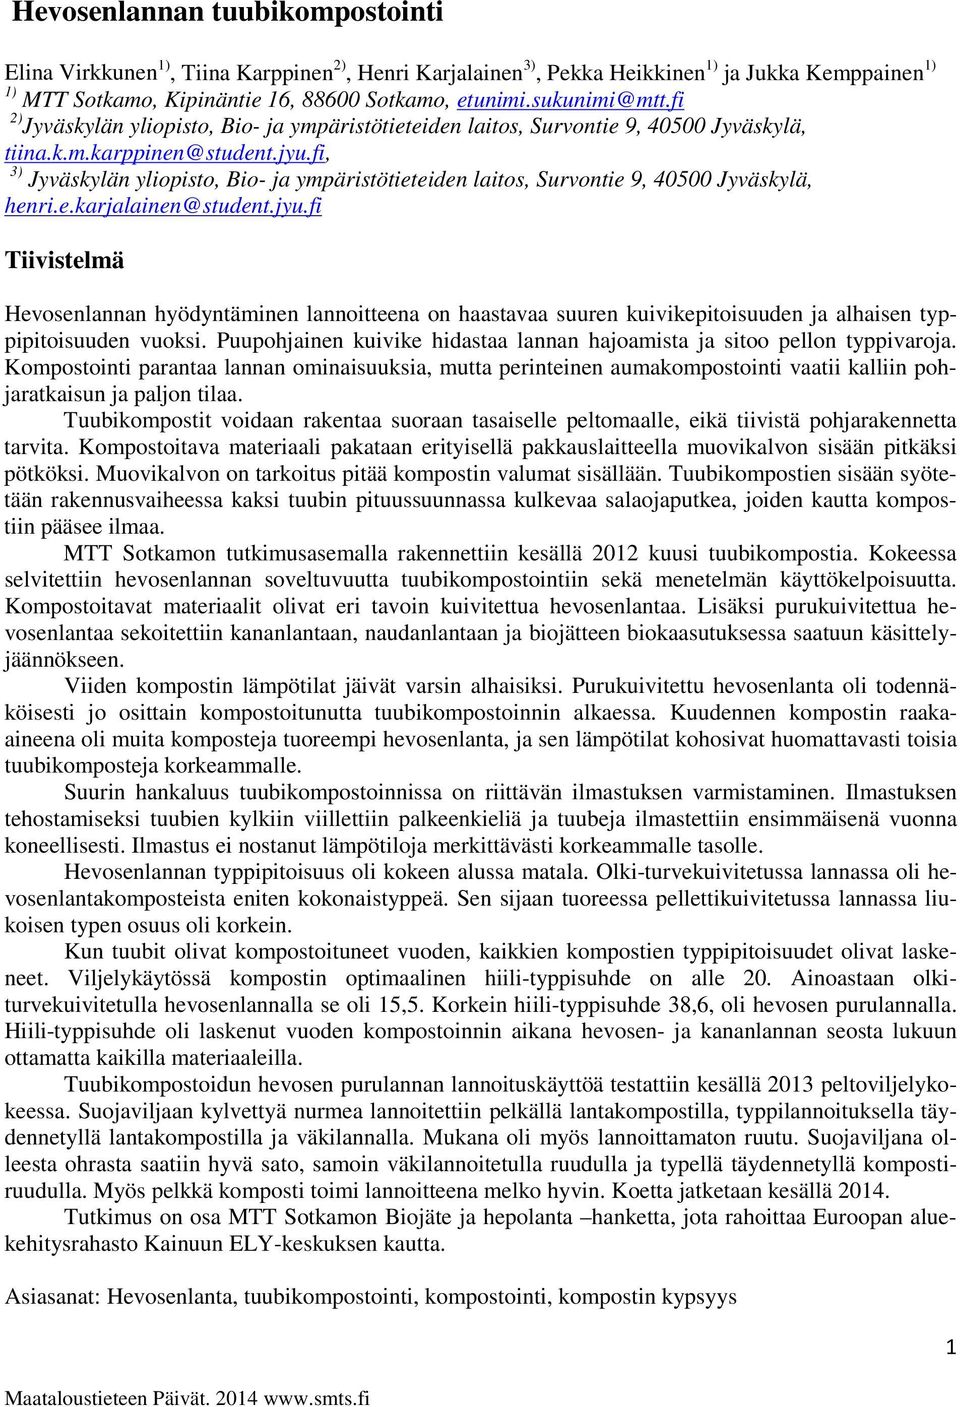 fi, 3) Jyväskylän yliopisto, Bio- ja ympäristötieteiden laitos, Survontie 9, 40500 Jyväskylä, henri.e.karjalainen@student.jyu.